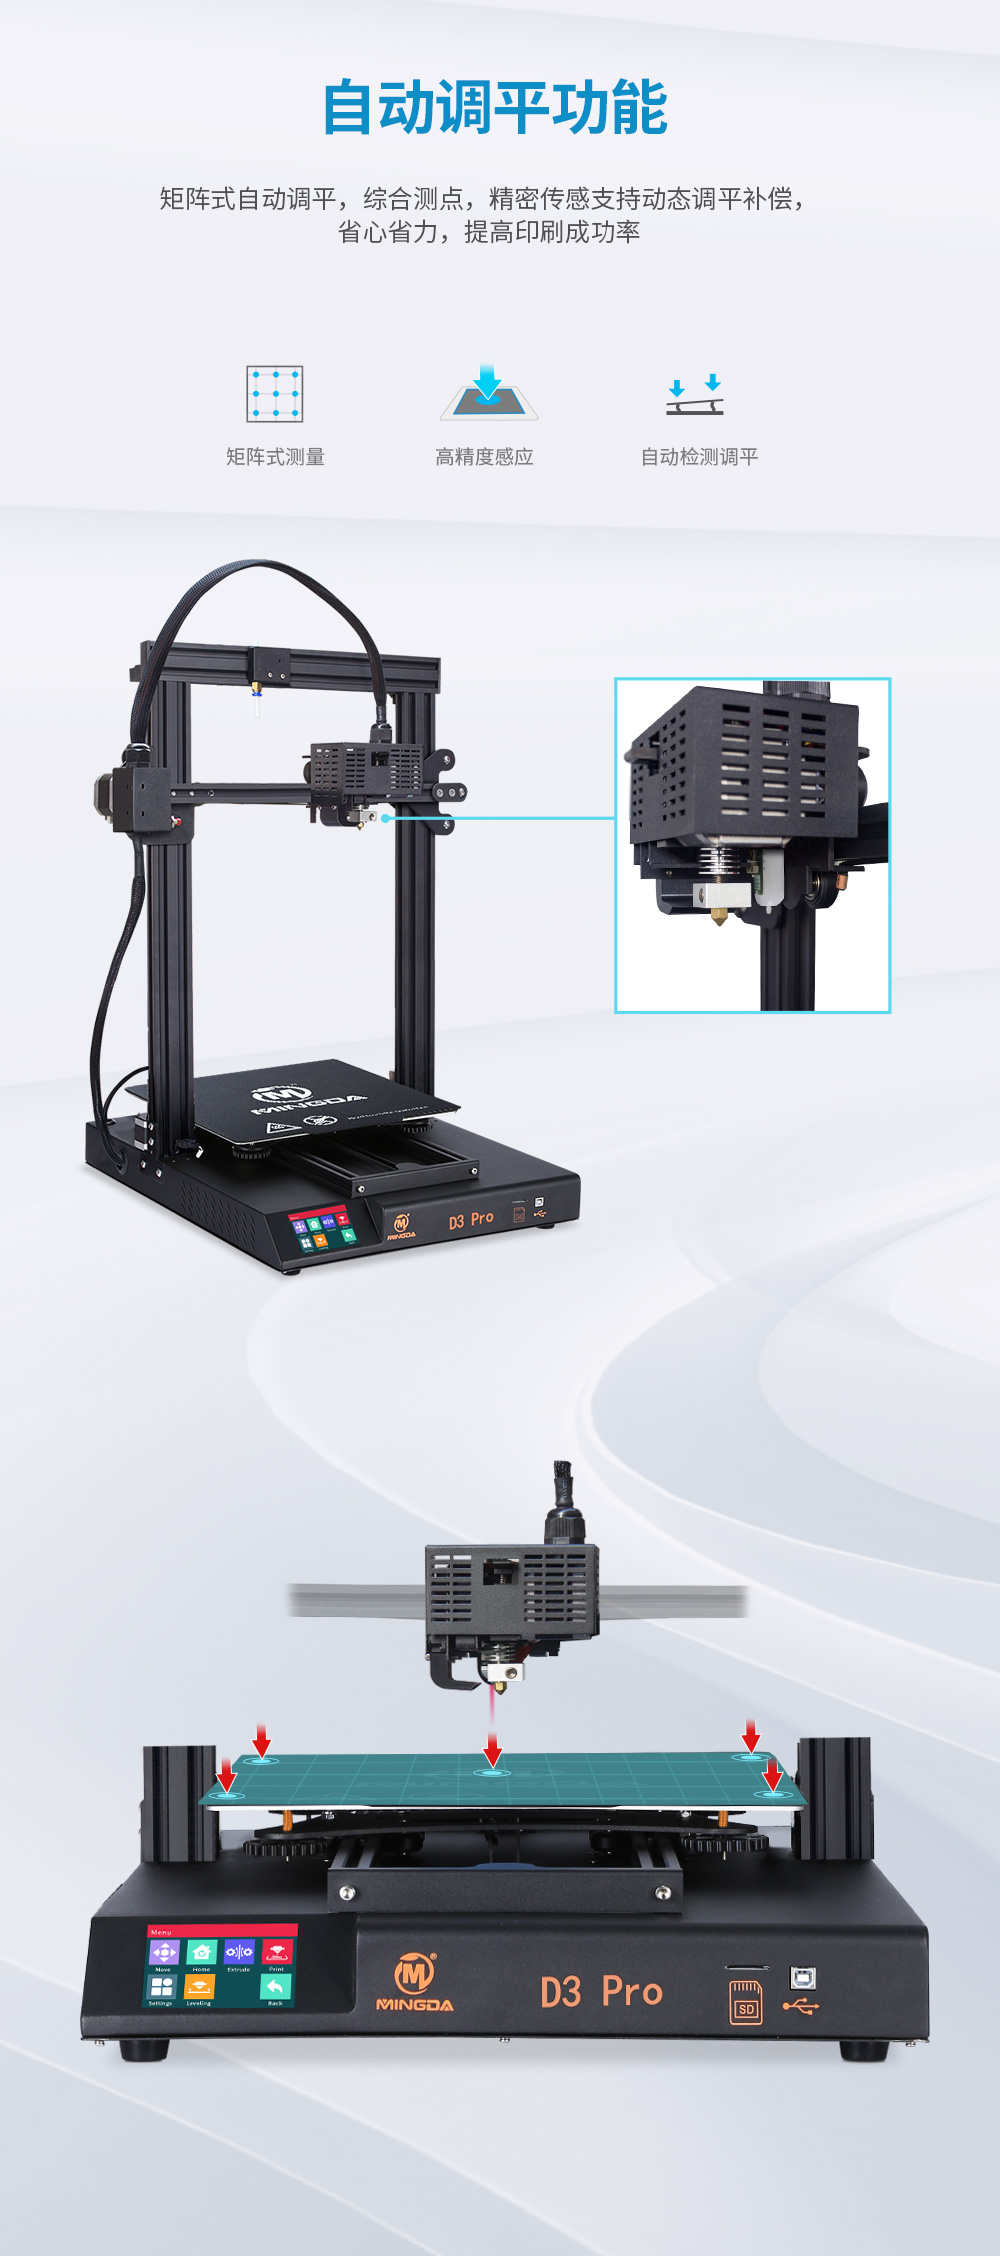 新品| 全新升级 D3 一体式专业级3D打印机 (图4)